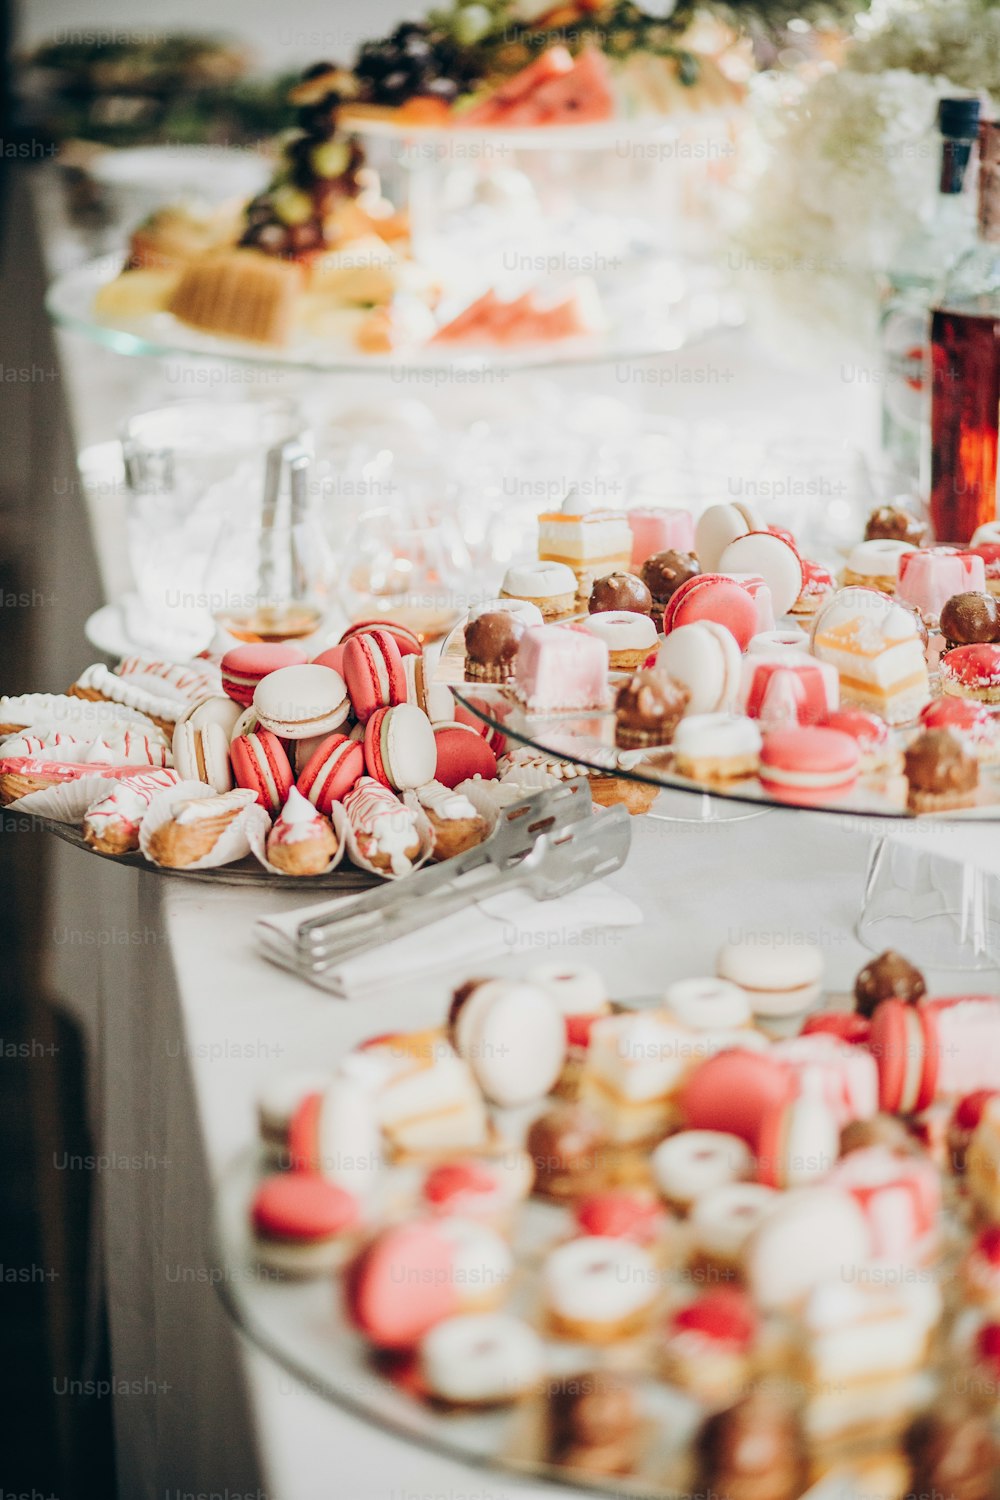 結婚披露宴やクリスマスのお祝いでおいしいピンクのキャンディーバー。ピンクと白のマカロン、カップケーキ、スタンドのデザート、モダンな甘いテーブル。ラグジュアリーケータリングのコンセプト